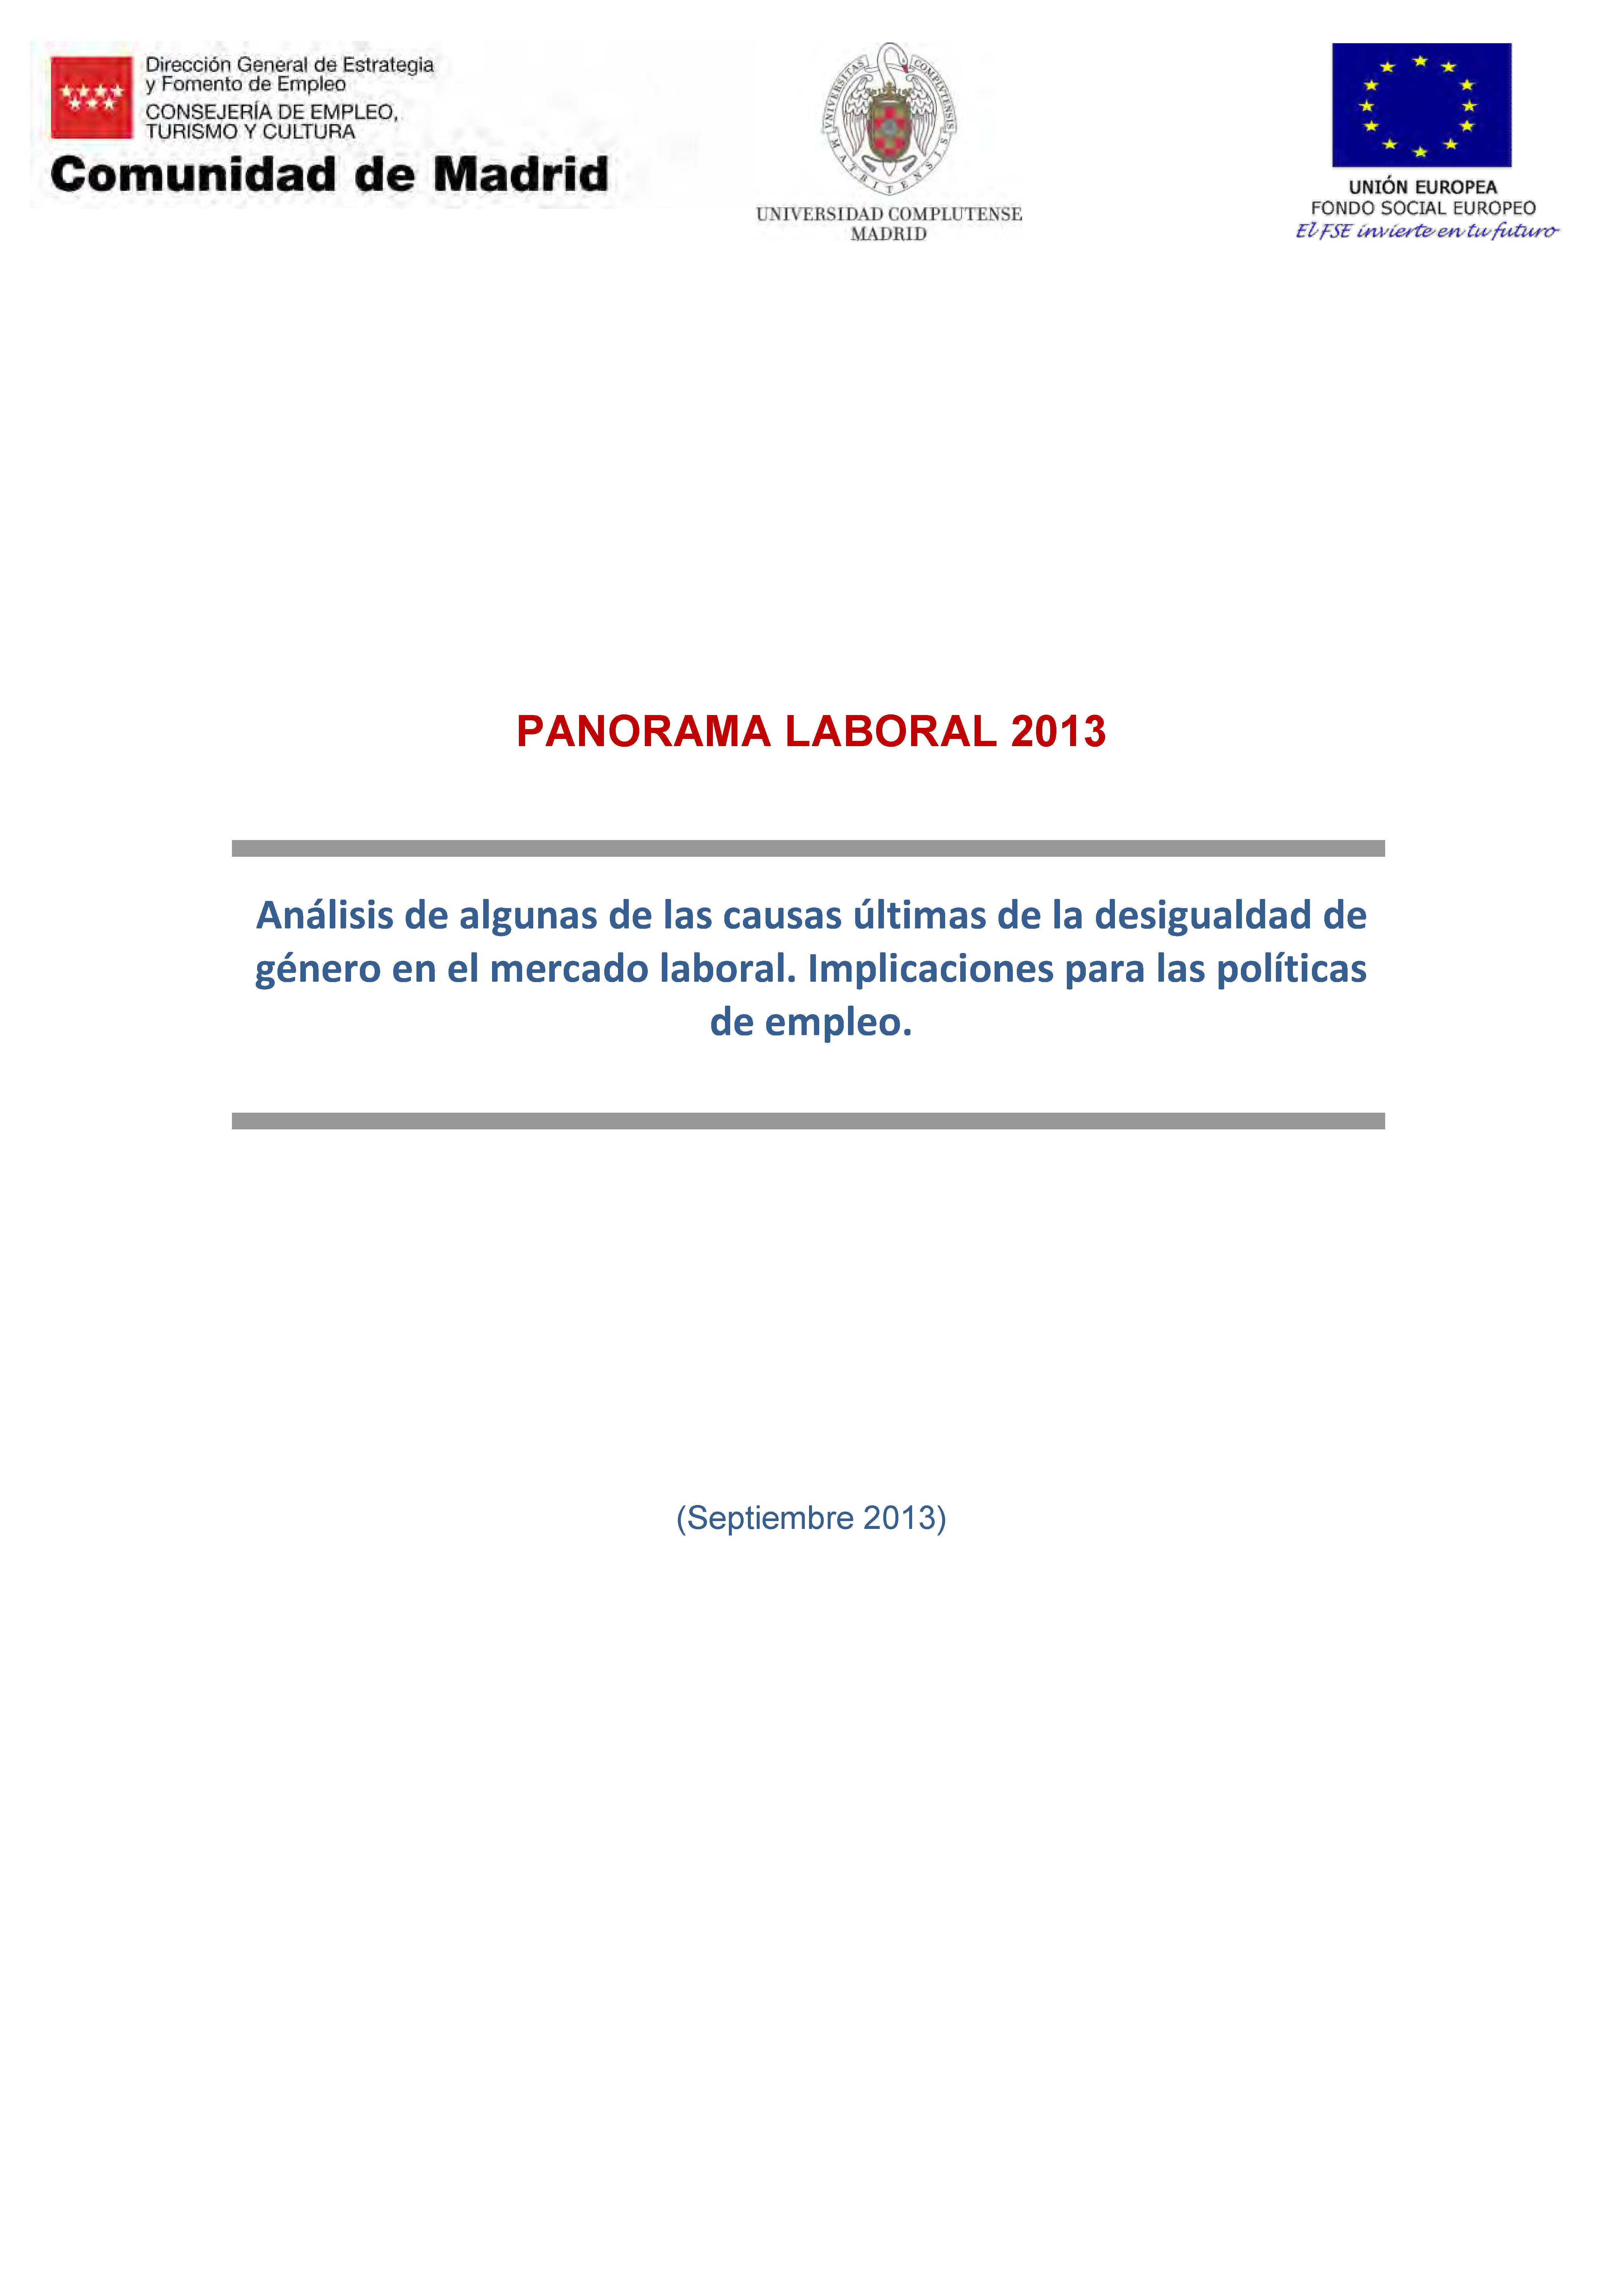 Portada de Panorama Laboral 2013 Análisis de algunas de las causas últimas de la desigualdad de género  en el mercado laboral. Implicaciones para las políticas de empleo.